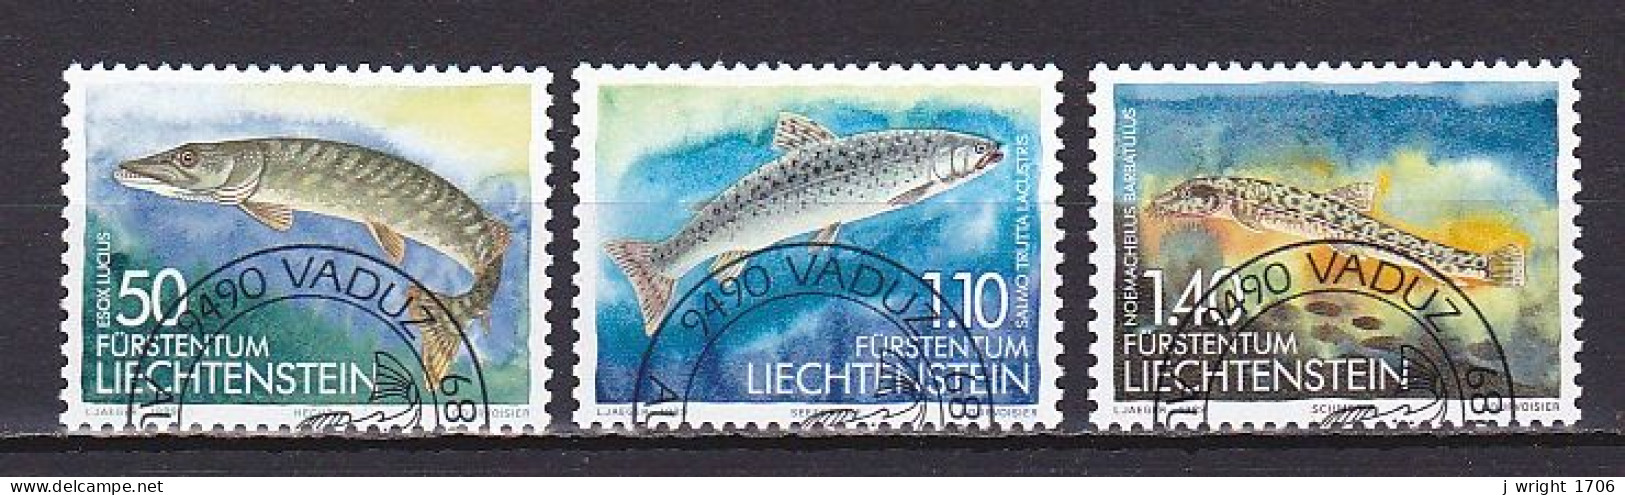 Liechtenstein, 1989, Fish 2nd Series, Set,  CTO - Gebruikt